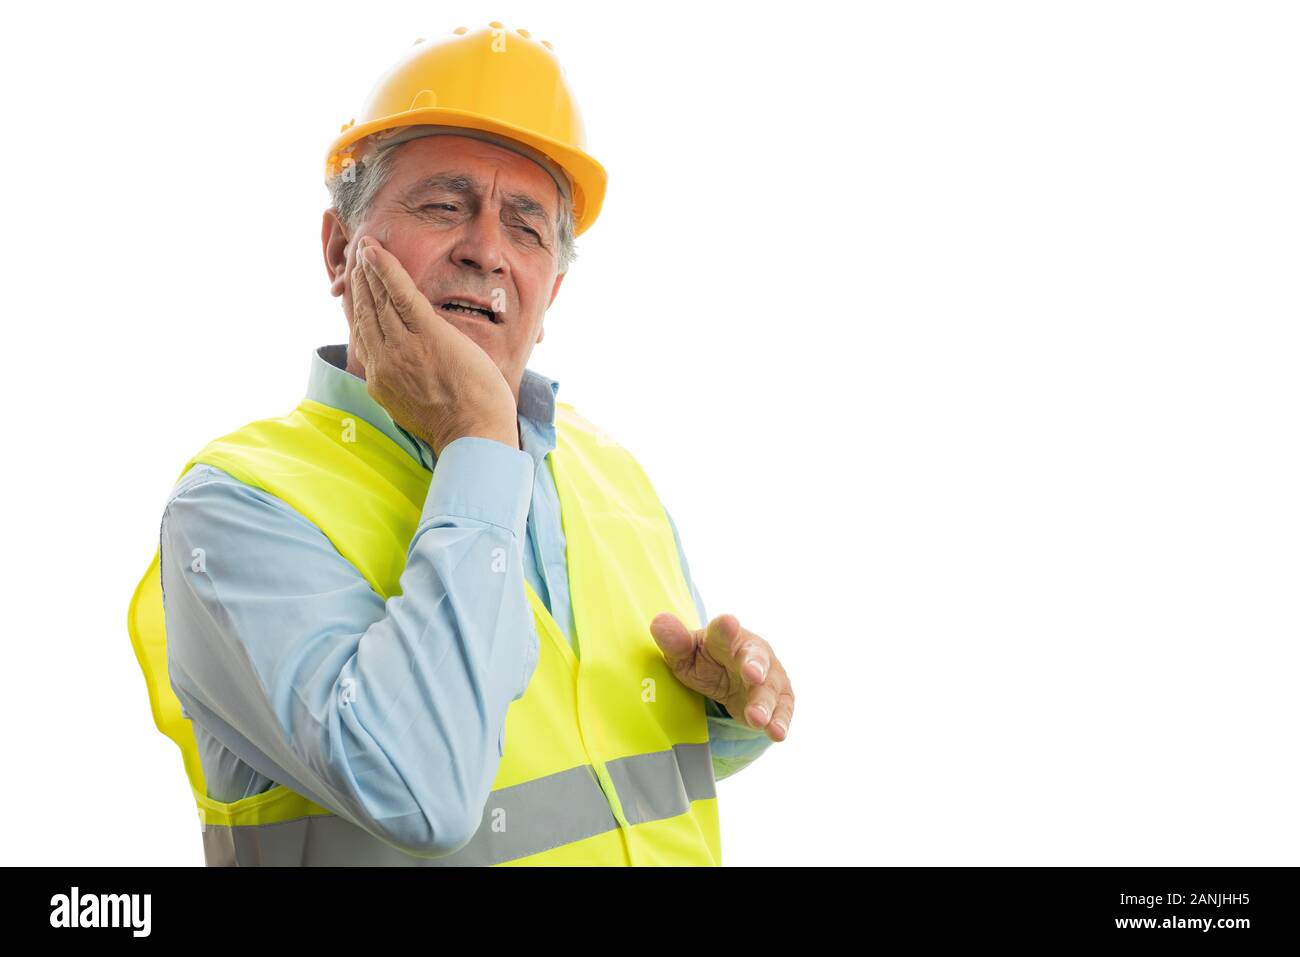 Builder Mann Gesicht zu berühren wie Zahnschmerzen Konzept mit verletzten Ausdruck auf weißem Hintergrund Stockfoto